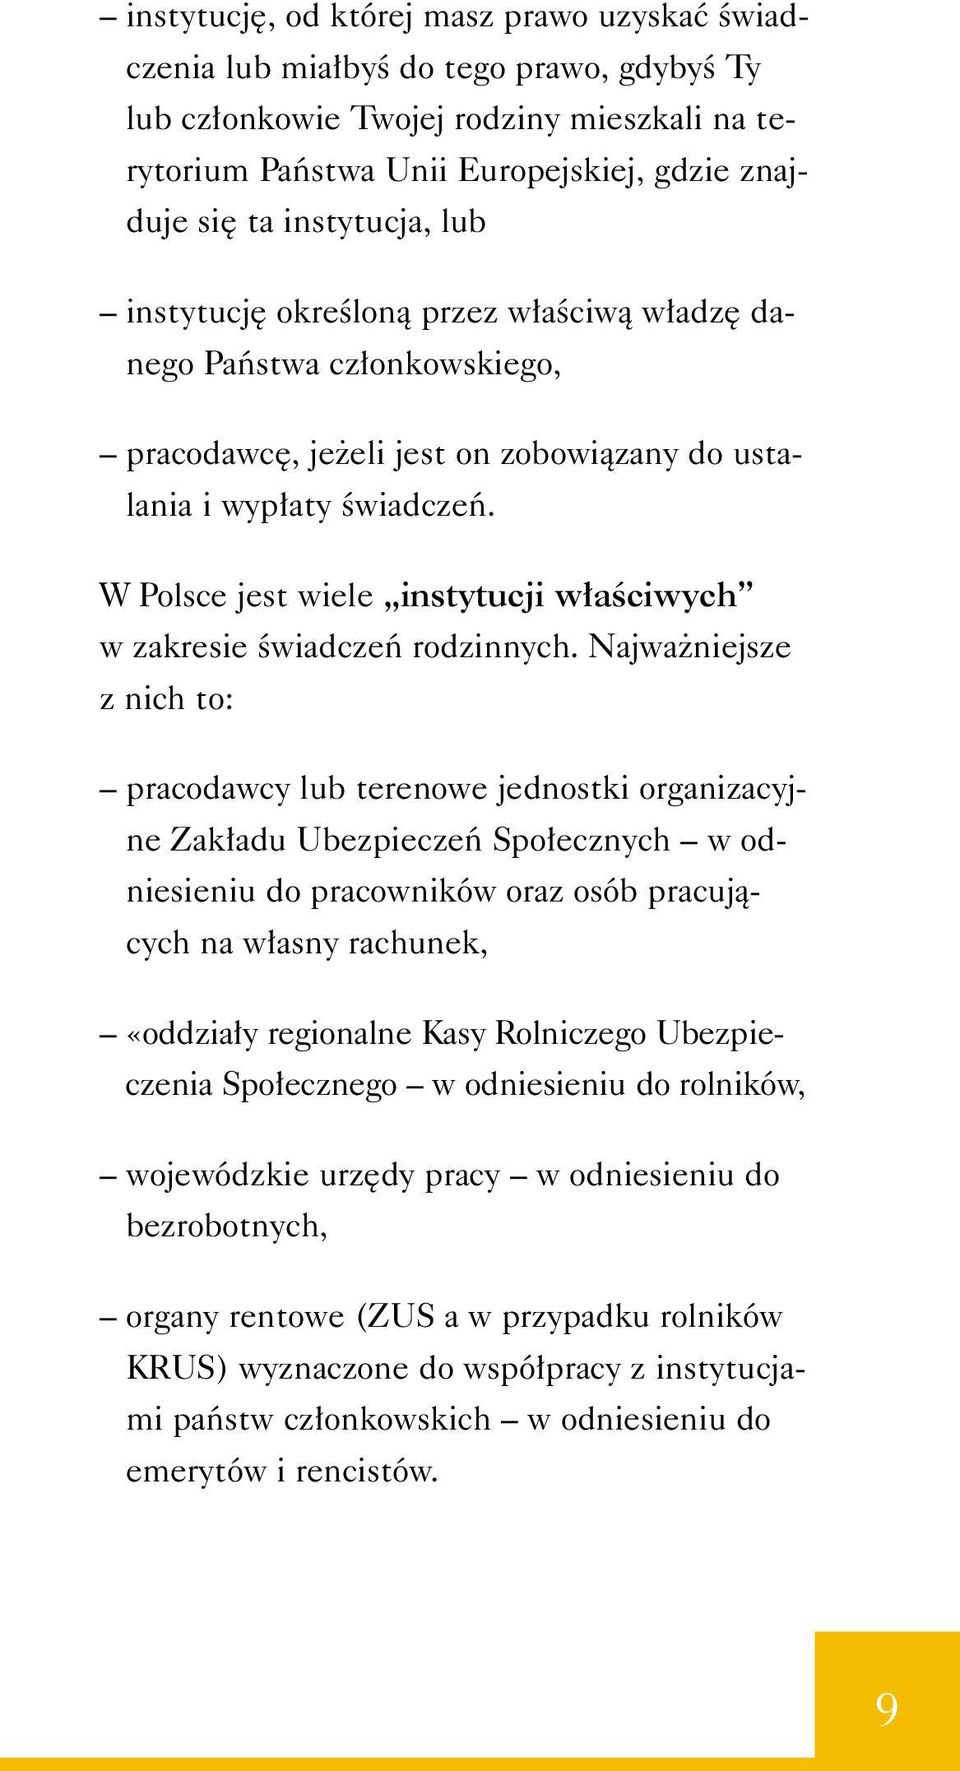 W Polsce jest wiele instytucji w aêciwych w zakresie Êwiadczeƒ rodzinnych.